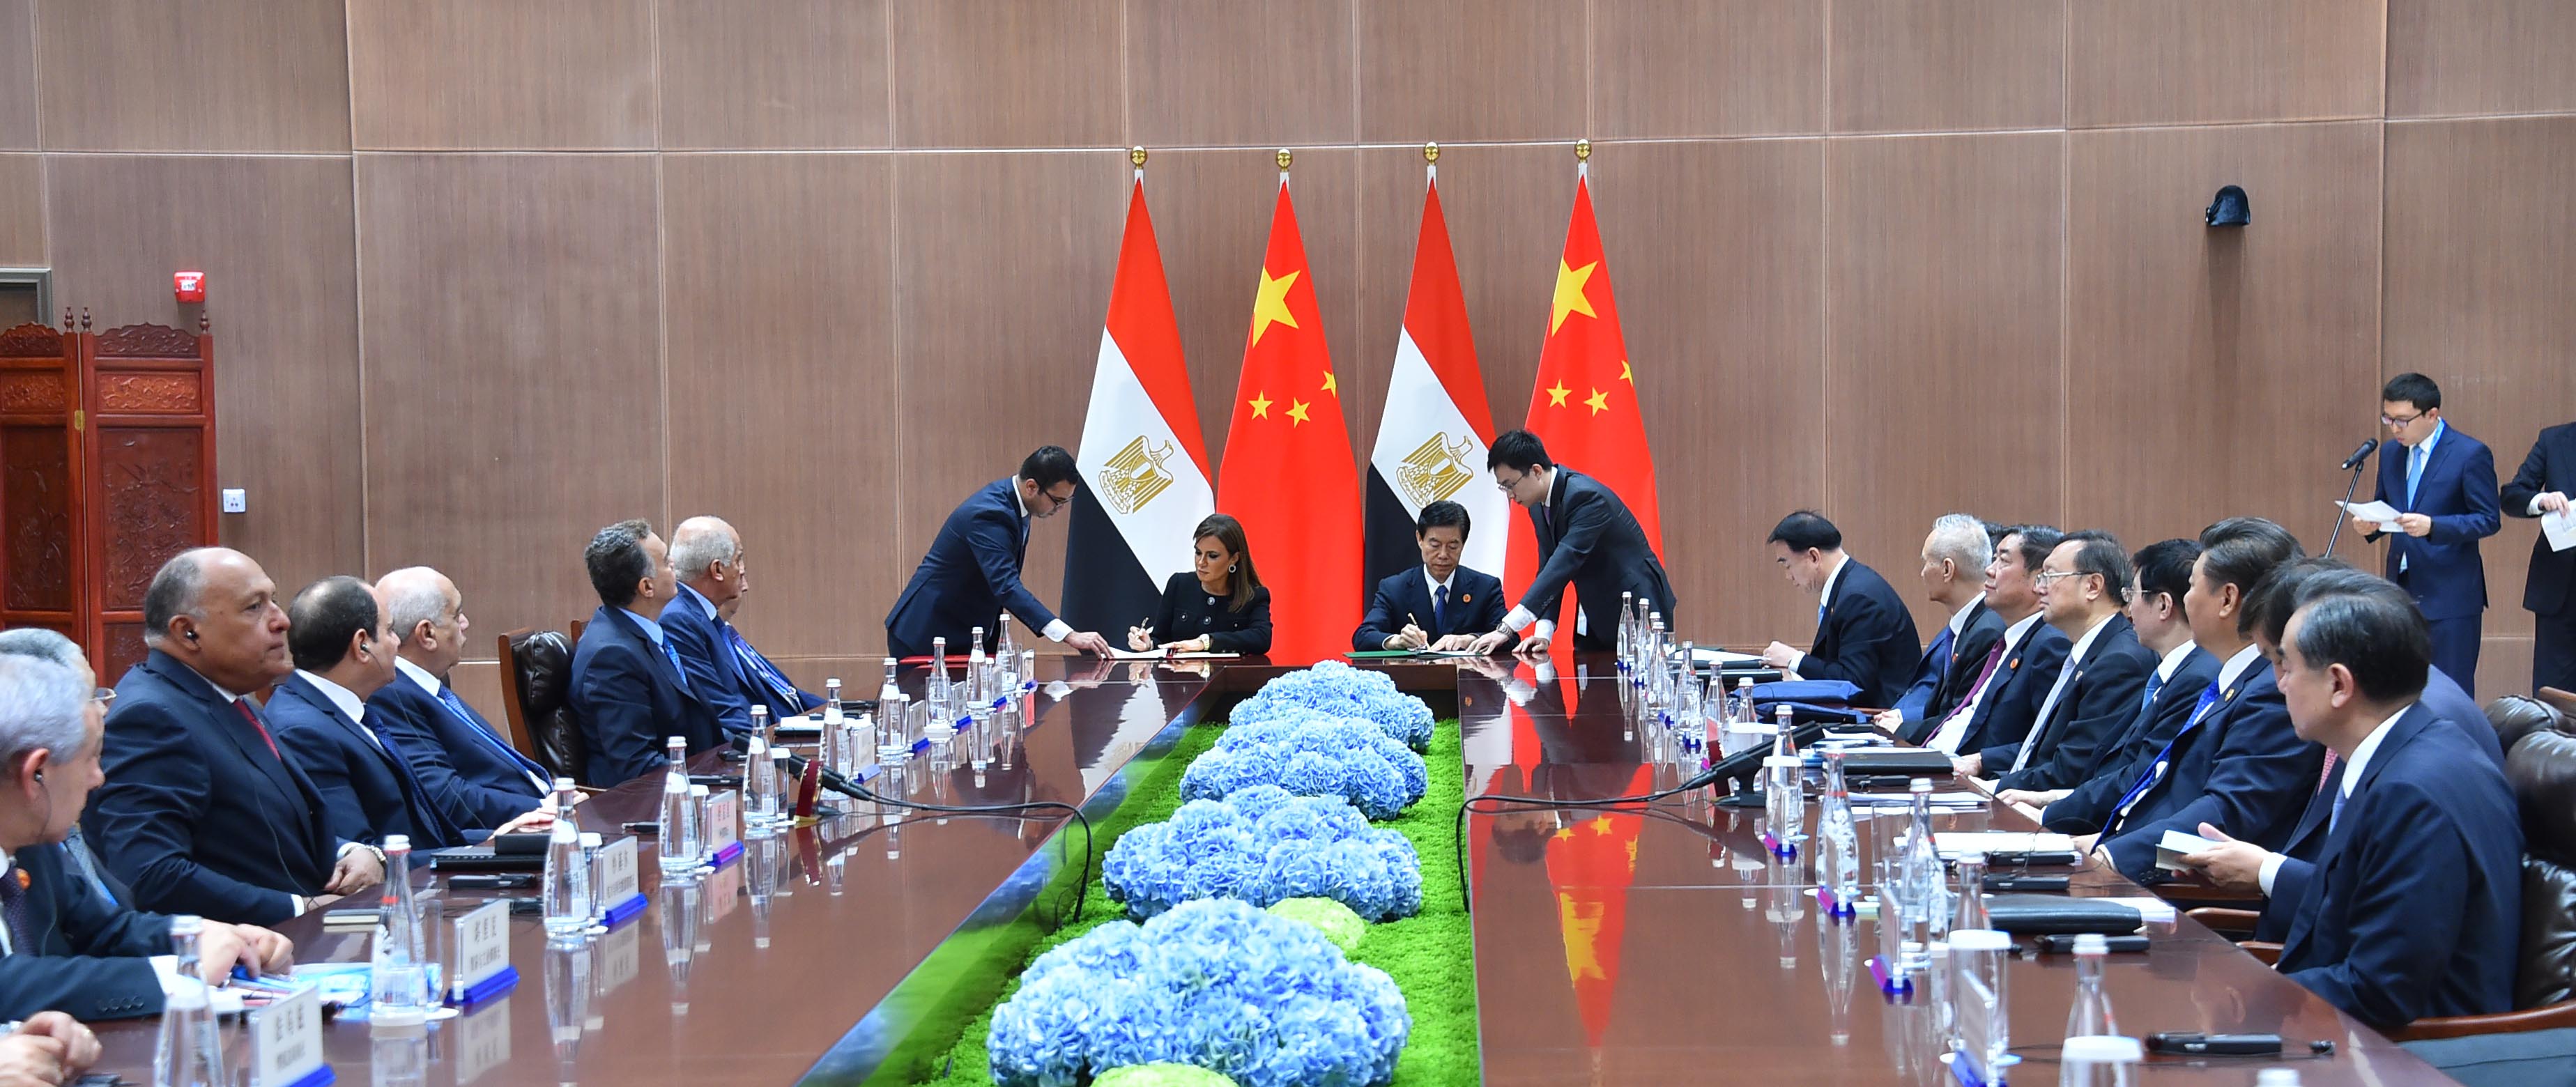 السيسي يلتقى رئيسى الصين وجنوب أفريقيا ورئيس وزراء الهند على هامش بريكس (5)